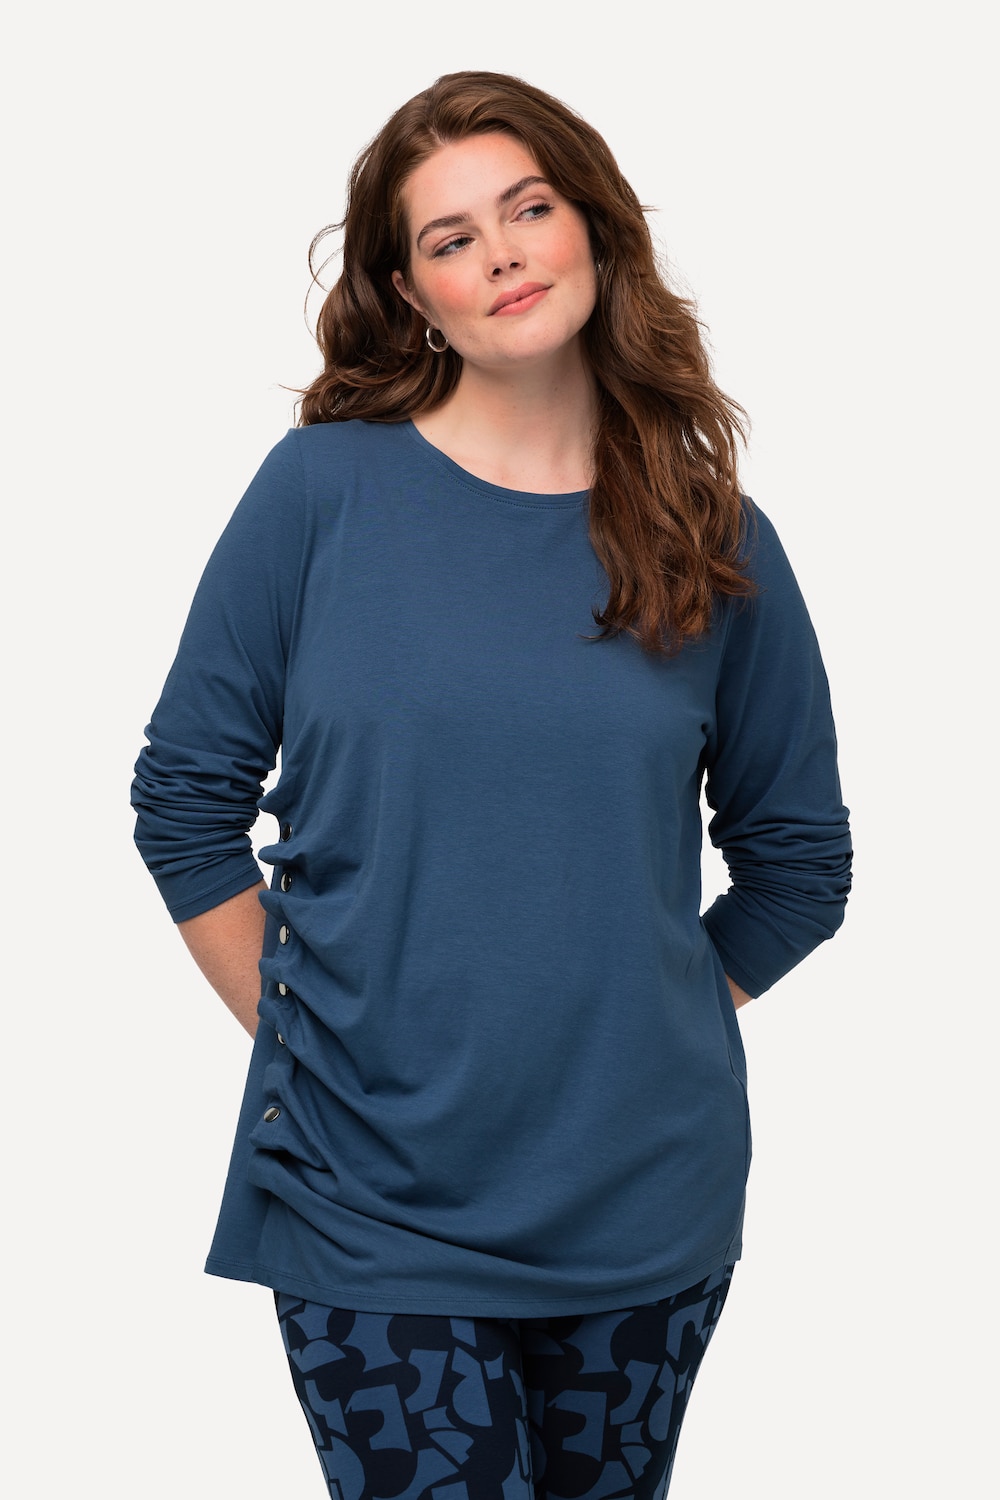 Grote Maten Shirt, Dames, blauw, Maat: 50/52, Katoen, Ulla Popken